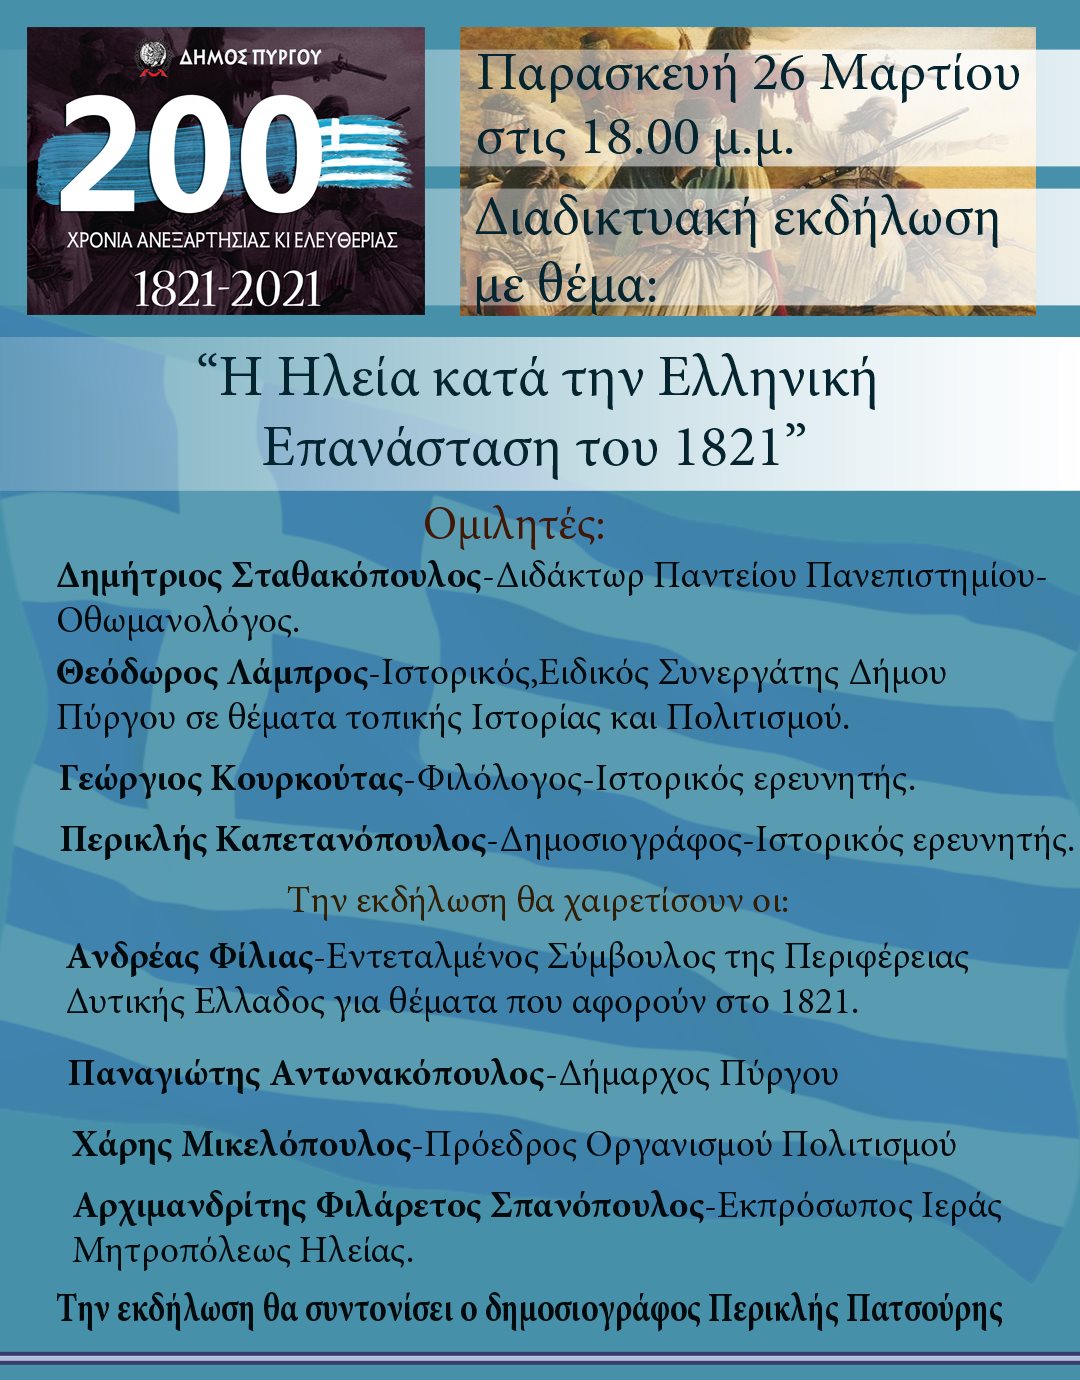 Δήμος Πύργου: Διαδικτυακή εκδήλωση με θέμα « «Η Ηλεία κατά την Ελληνική Επανάσταση του 1821» την Παρασκευή 26/3, με αφορμή την 200η επέτειο από το 1821